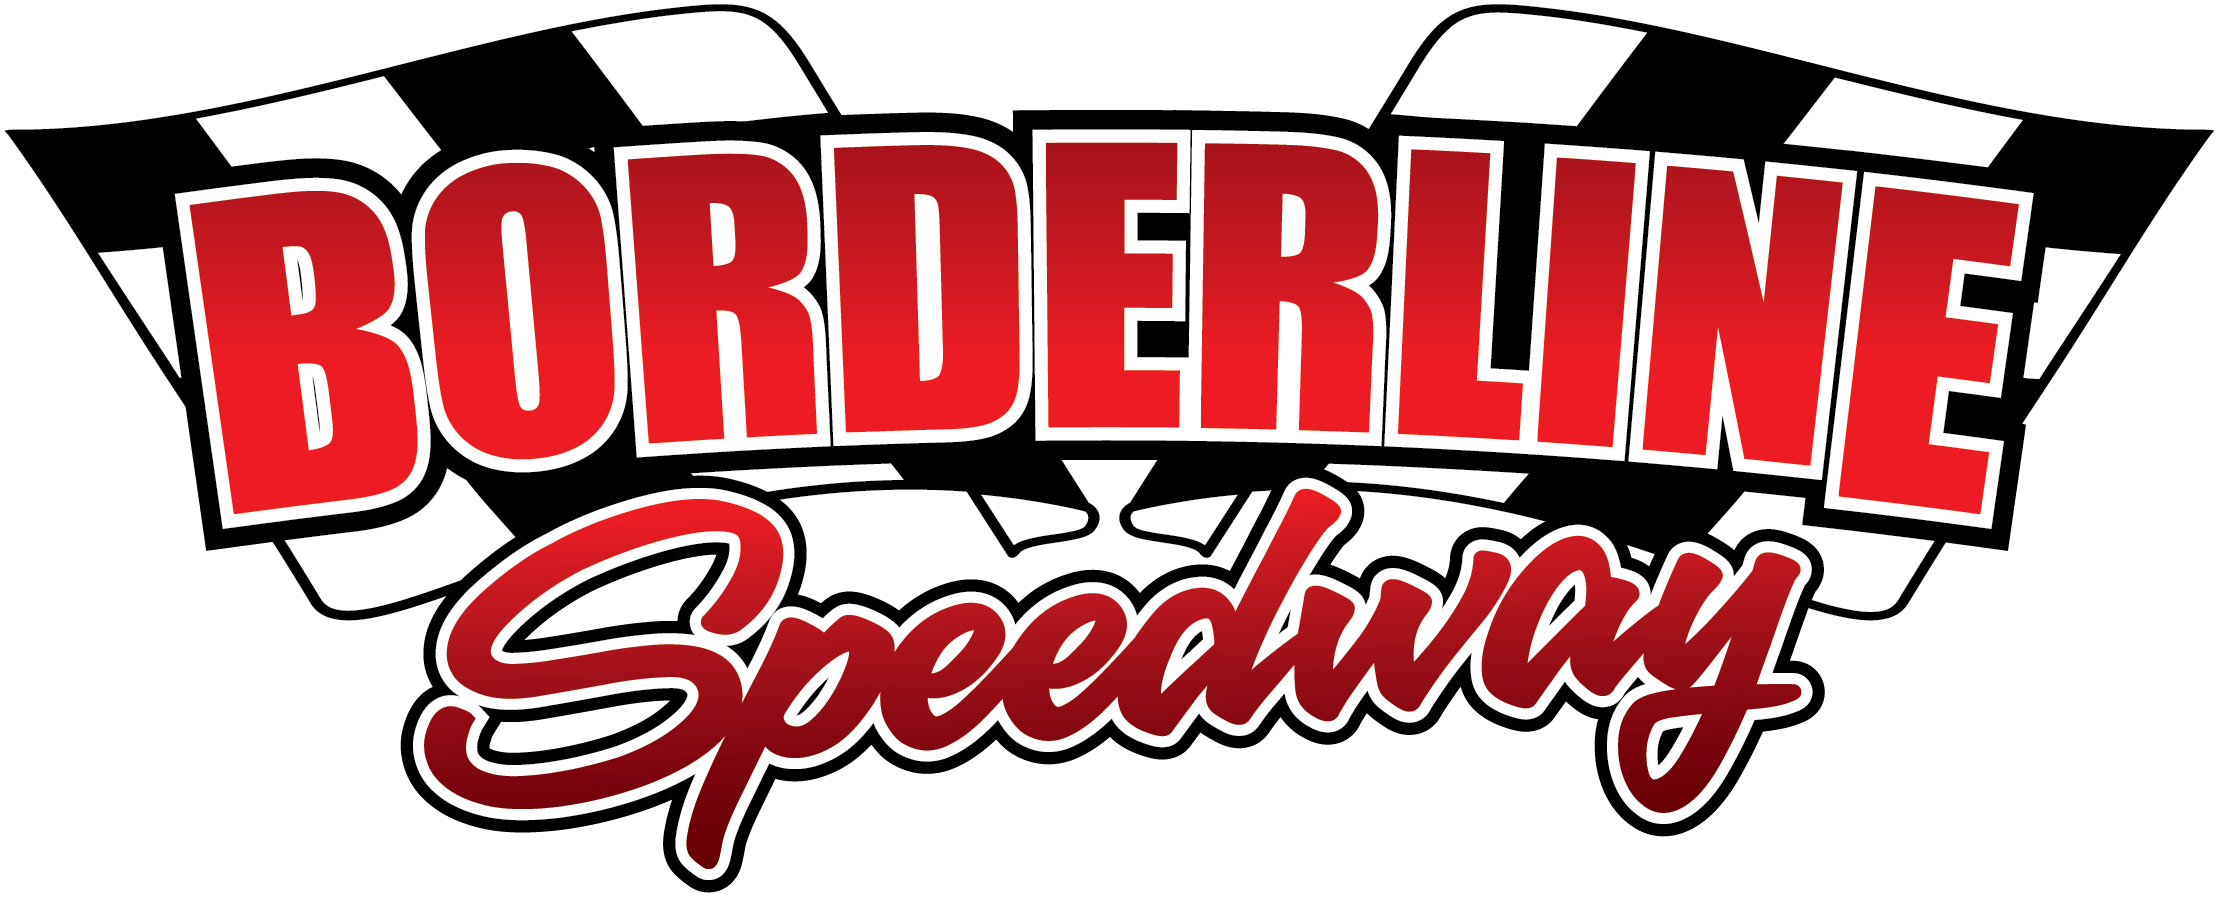 Borderline Speedway Mount Gambier